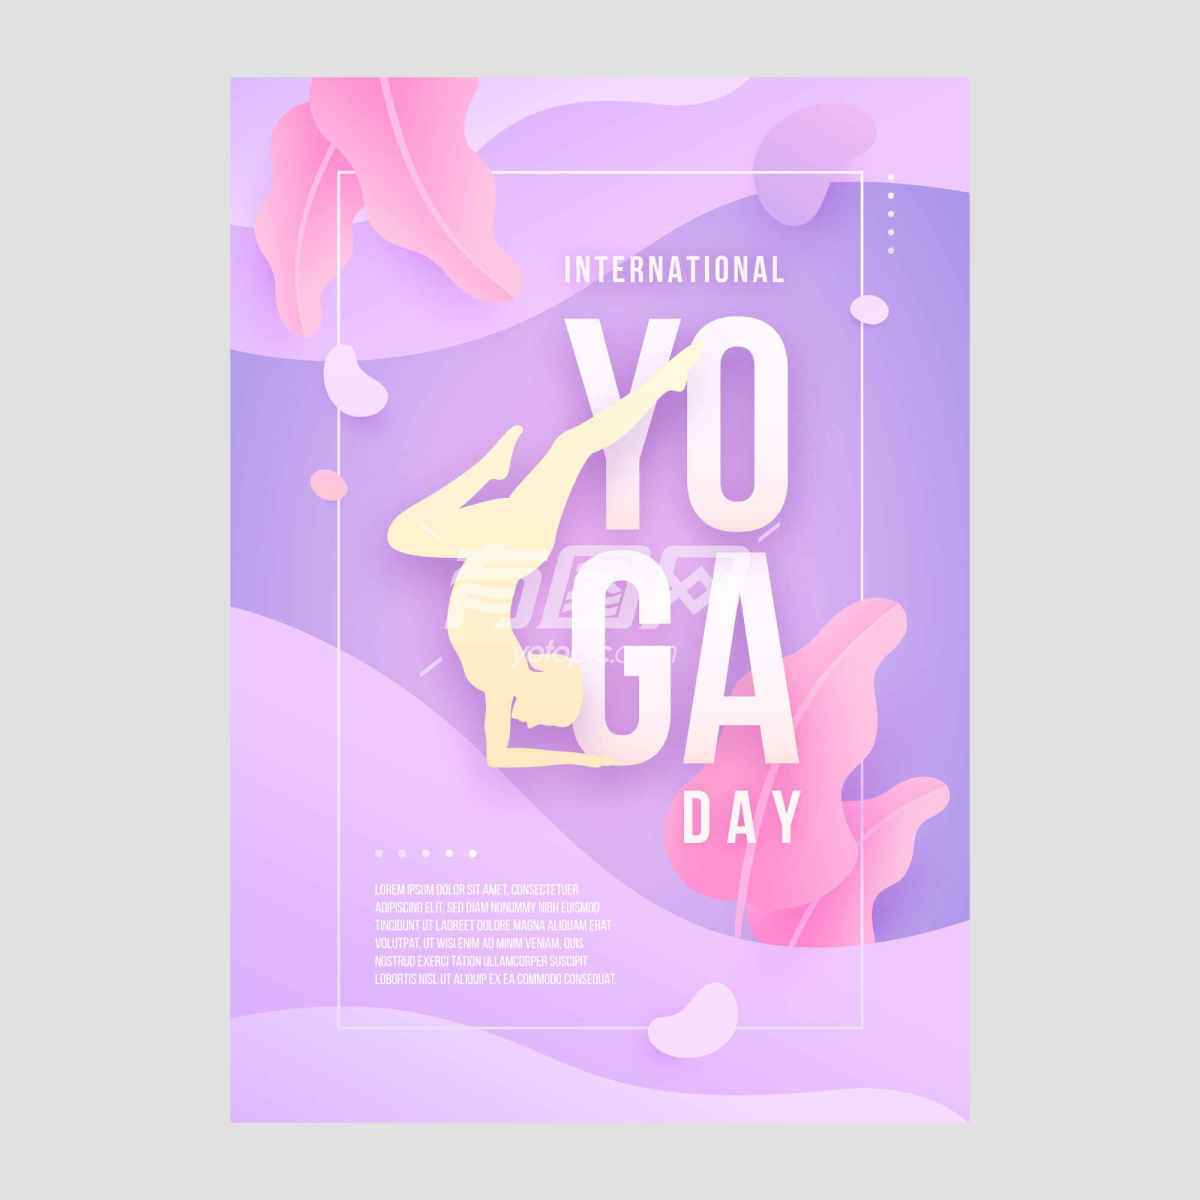 国际瑜伽日的宣传海报